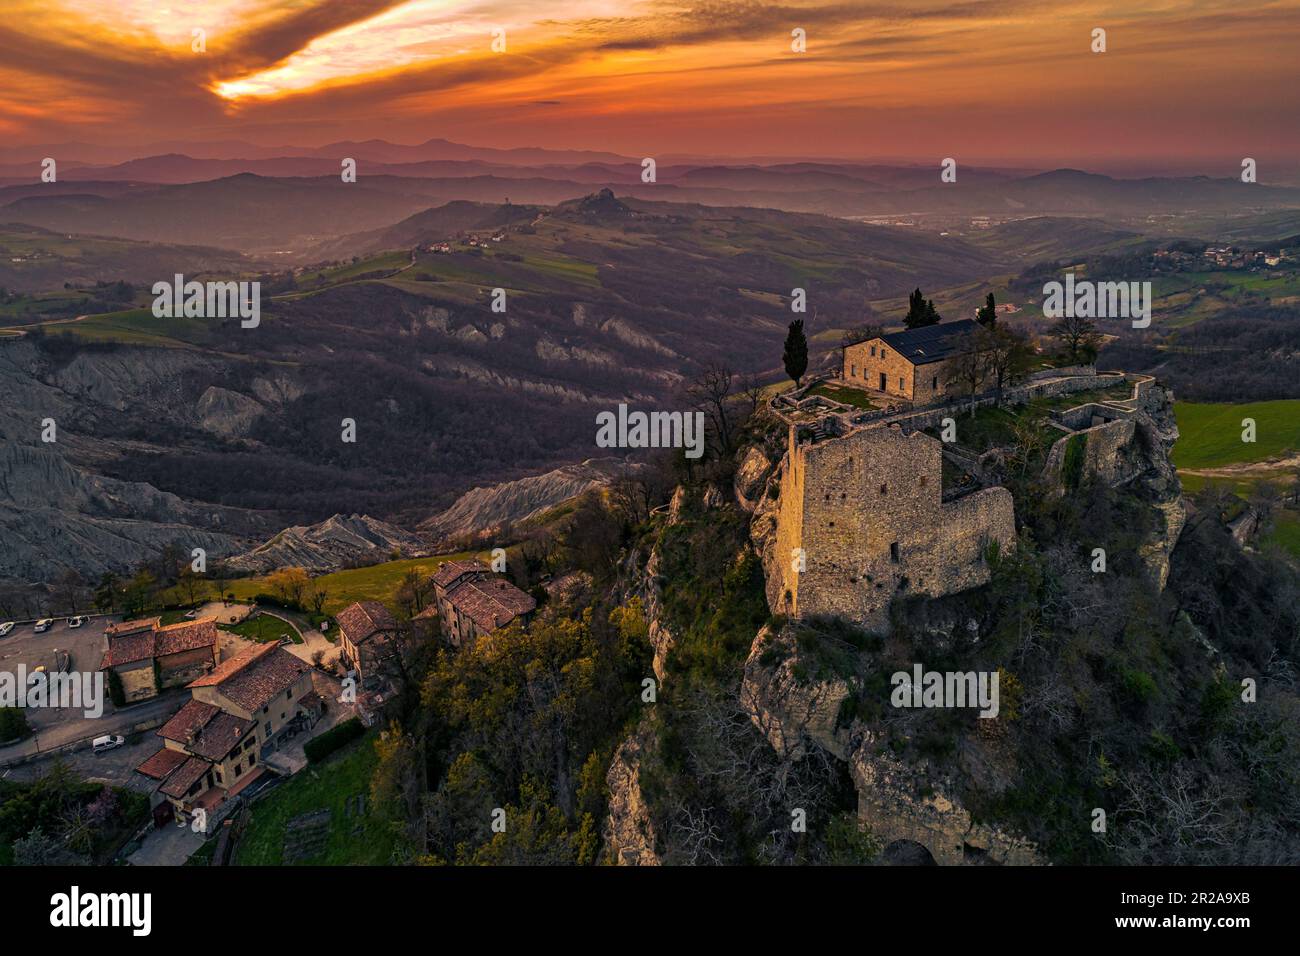 Veduta aerea dei ruderi del castello di Matilde di Canossa con i calanchi e le colline dell'Appennino emiliano sullo sfondo. Emilia Romagna Foto Stock